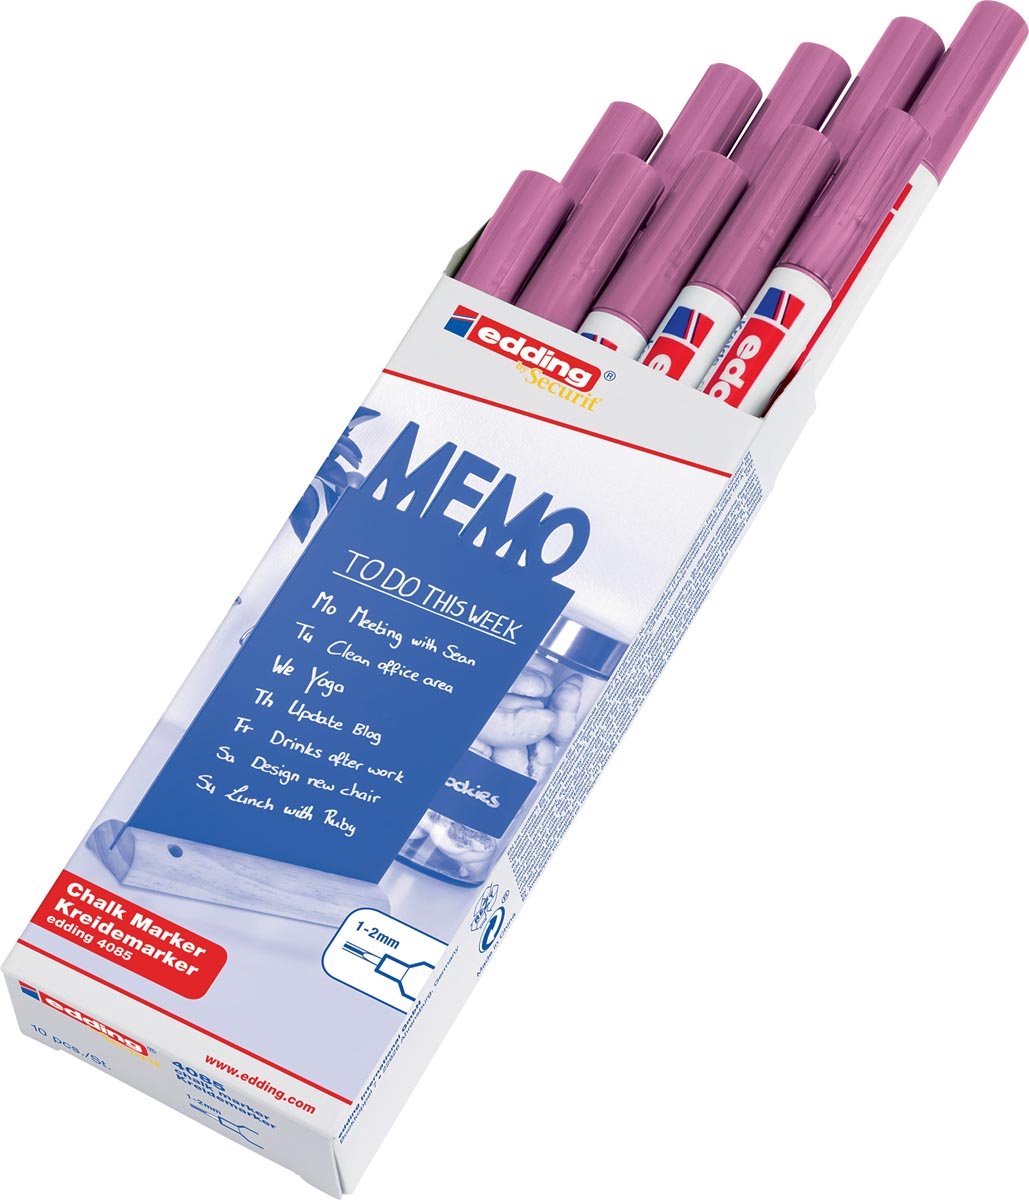 Krijtstift edding by Securit 4085 rond 1-2mm roze metallic - 10 stuks - 10 stuks